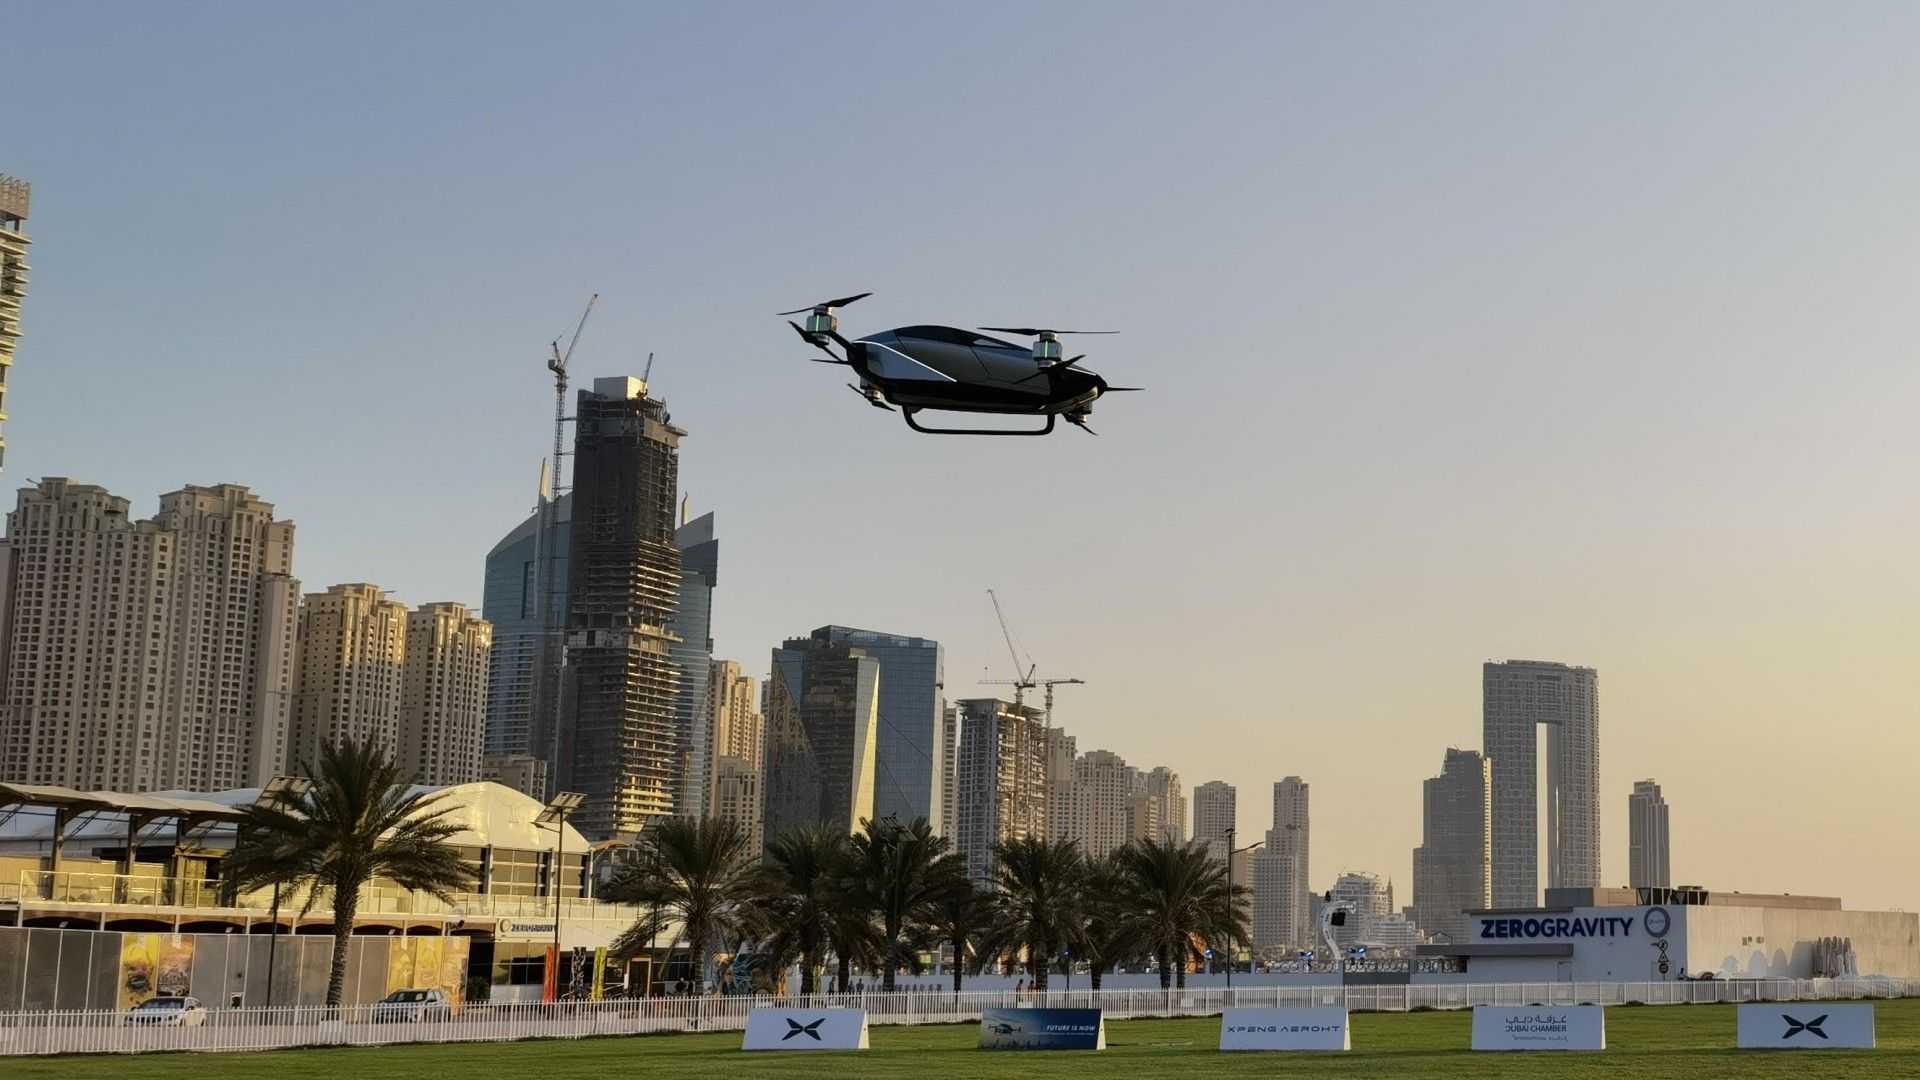 Chiếc ô tô điện bay Xpeng X2 cất cánh lần đầu tiên tại Dubai